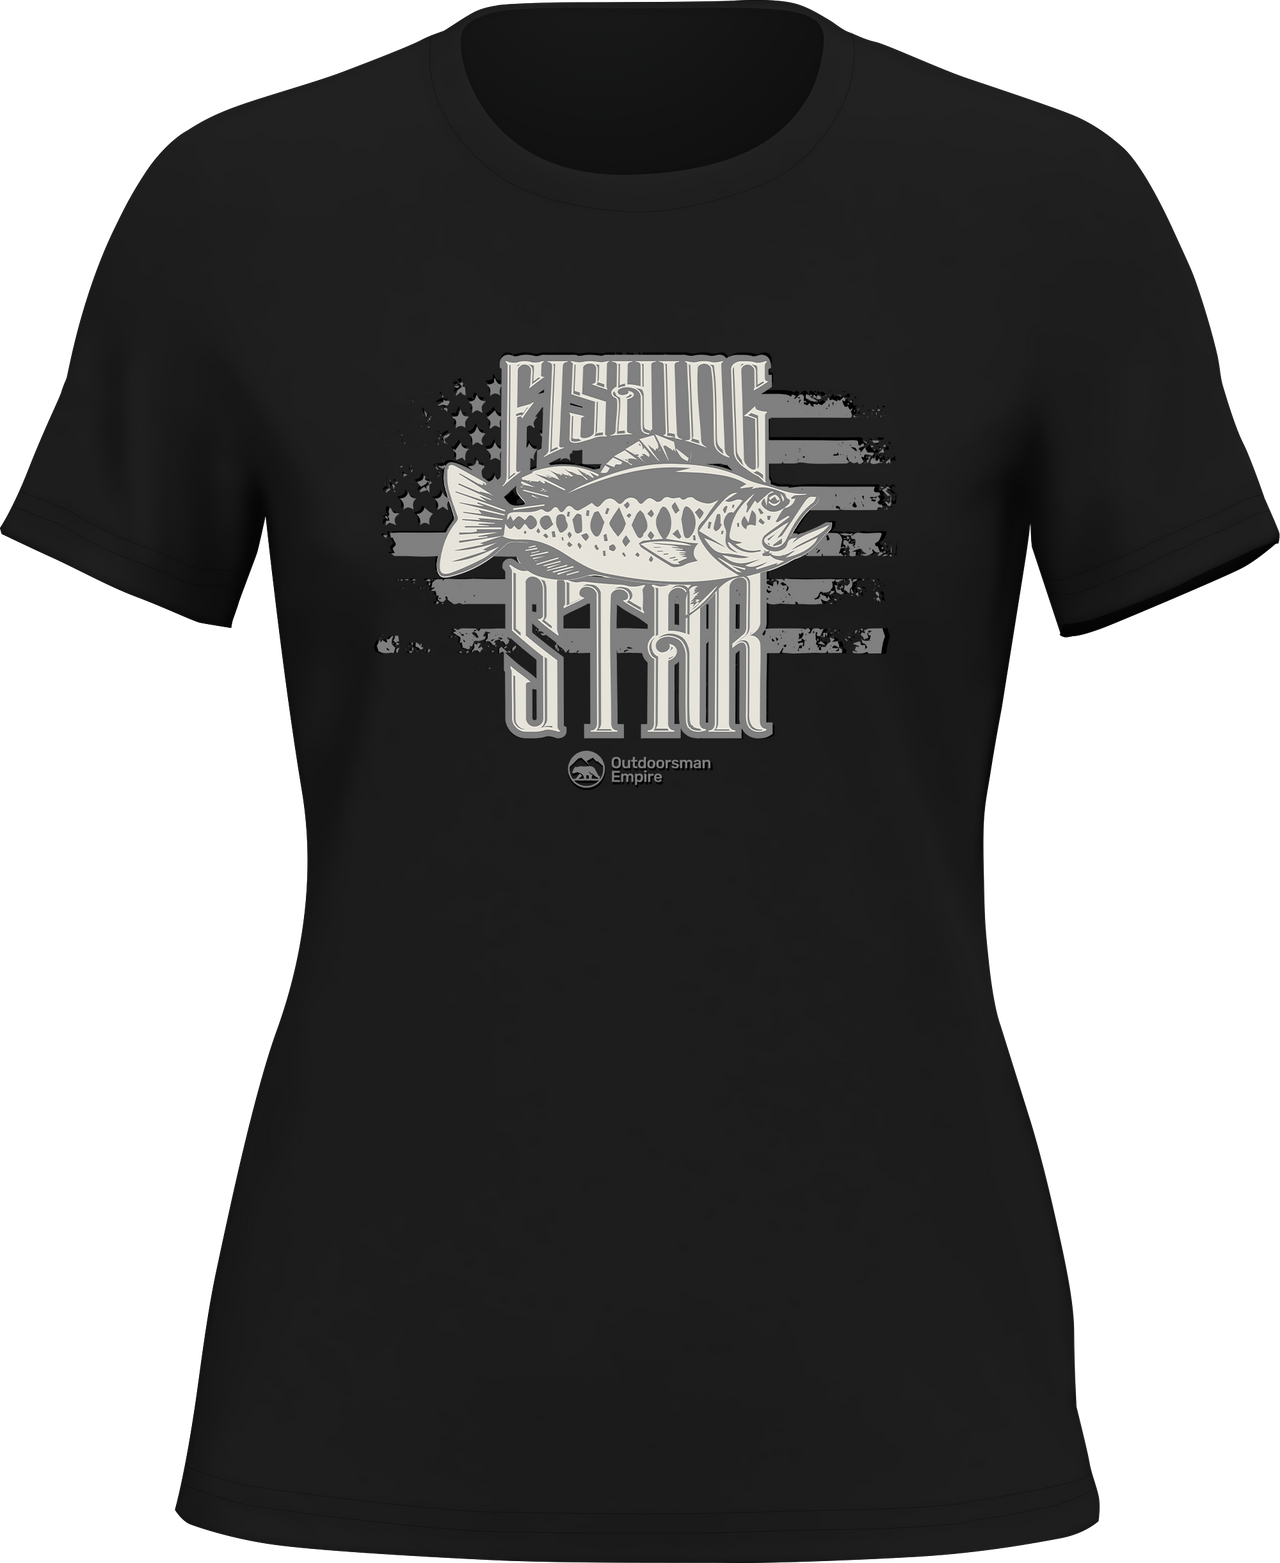 Fishing Star T-Shirt for Women